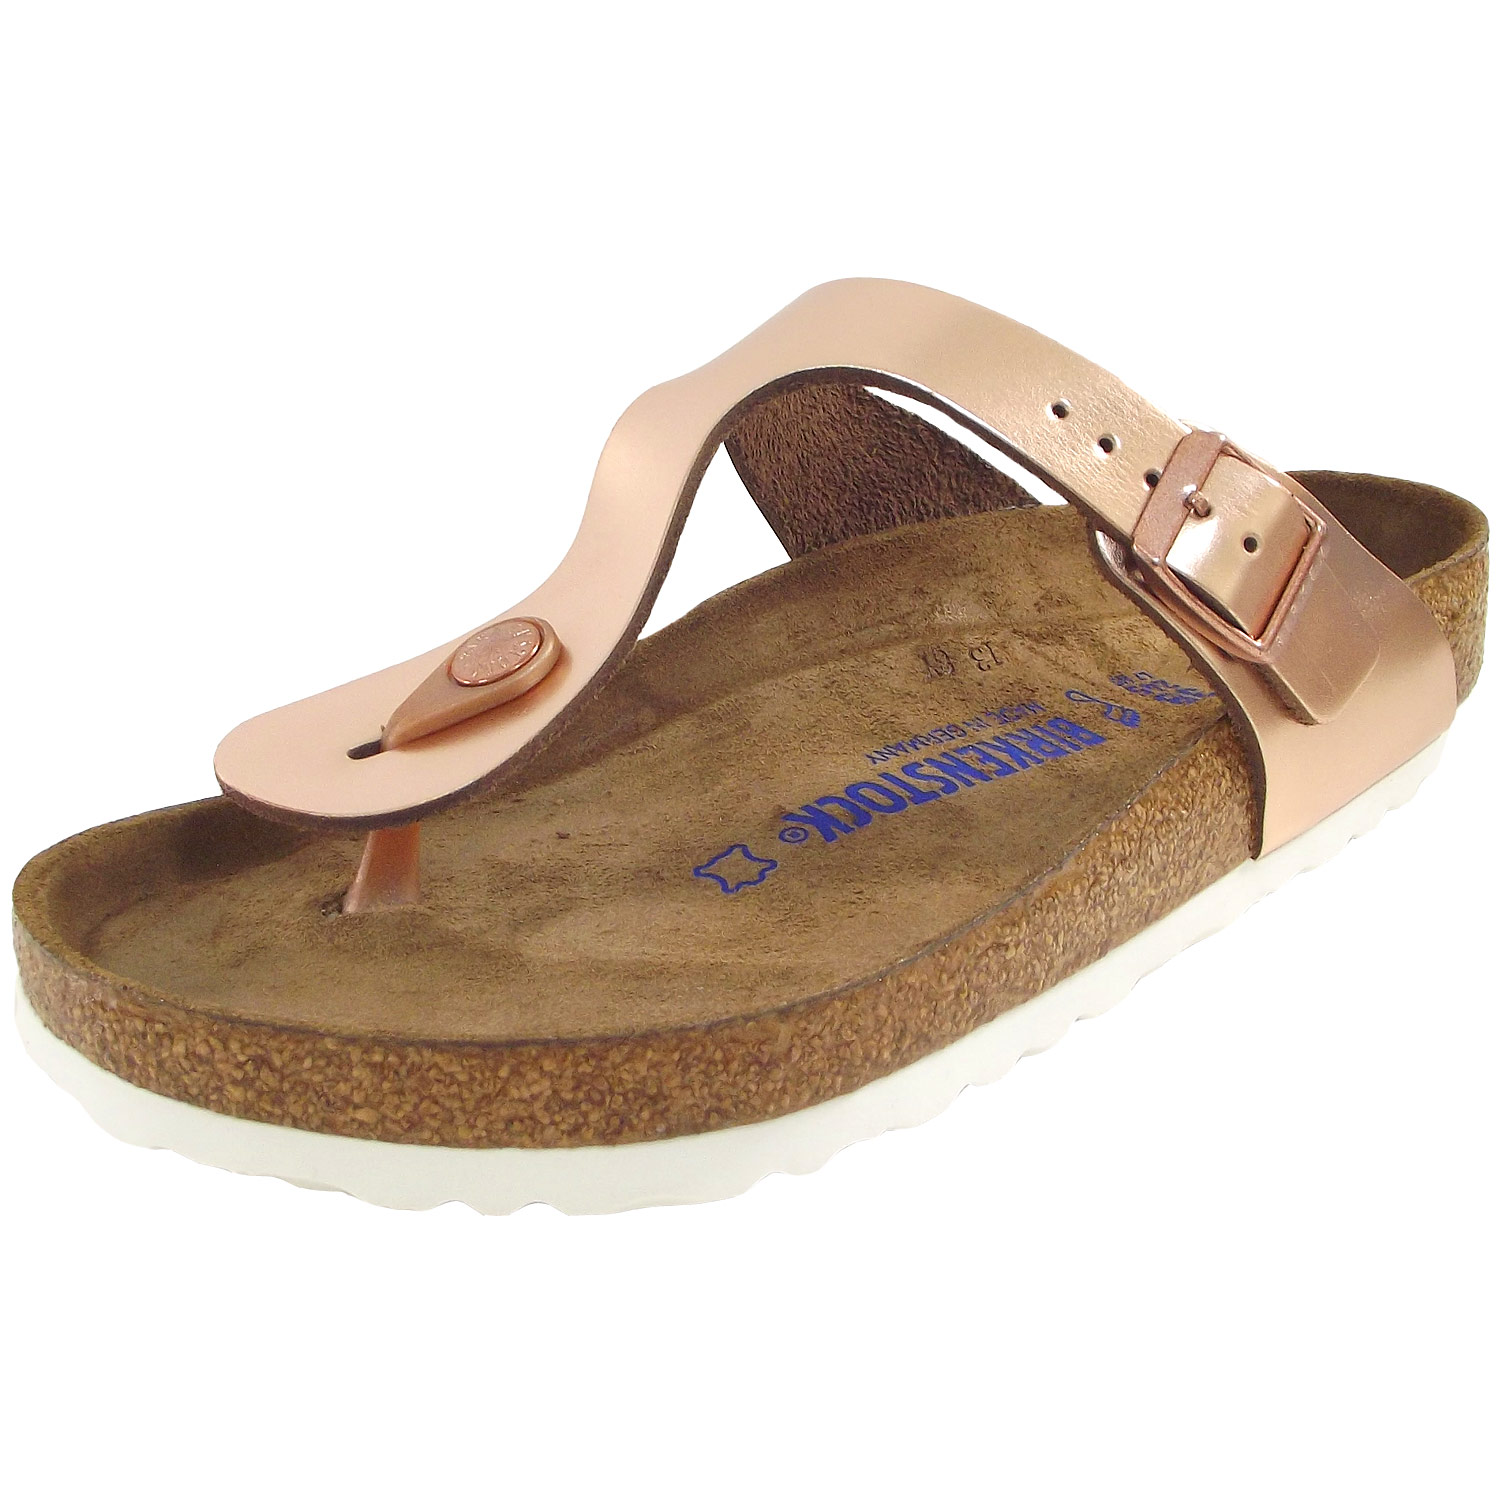 birkenstock thong sandals